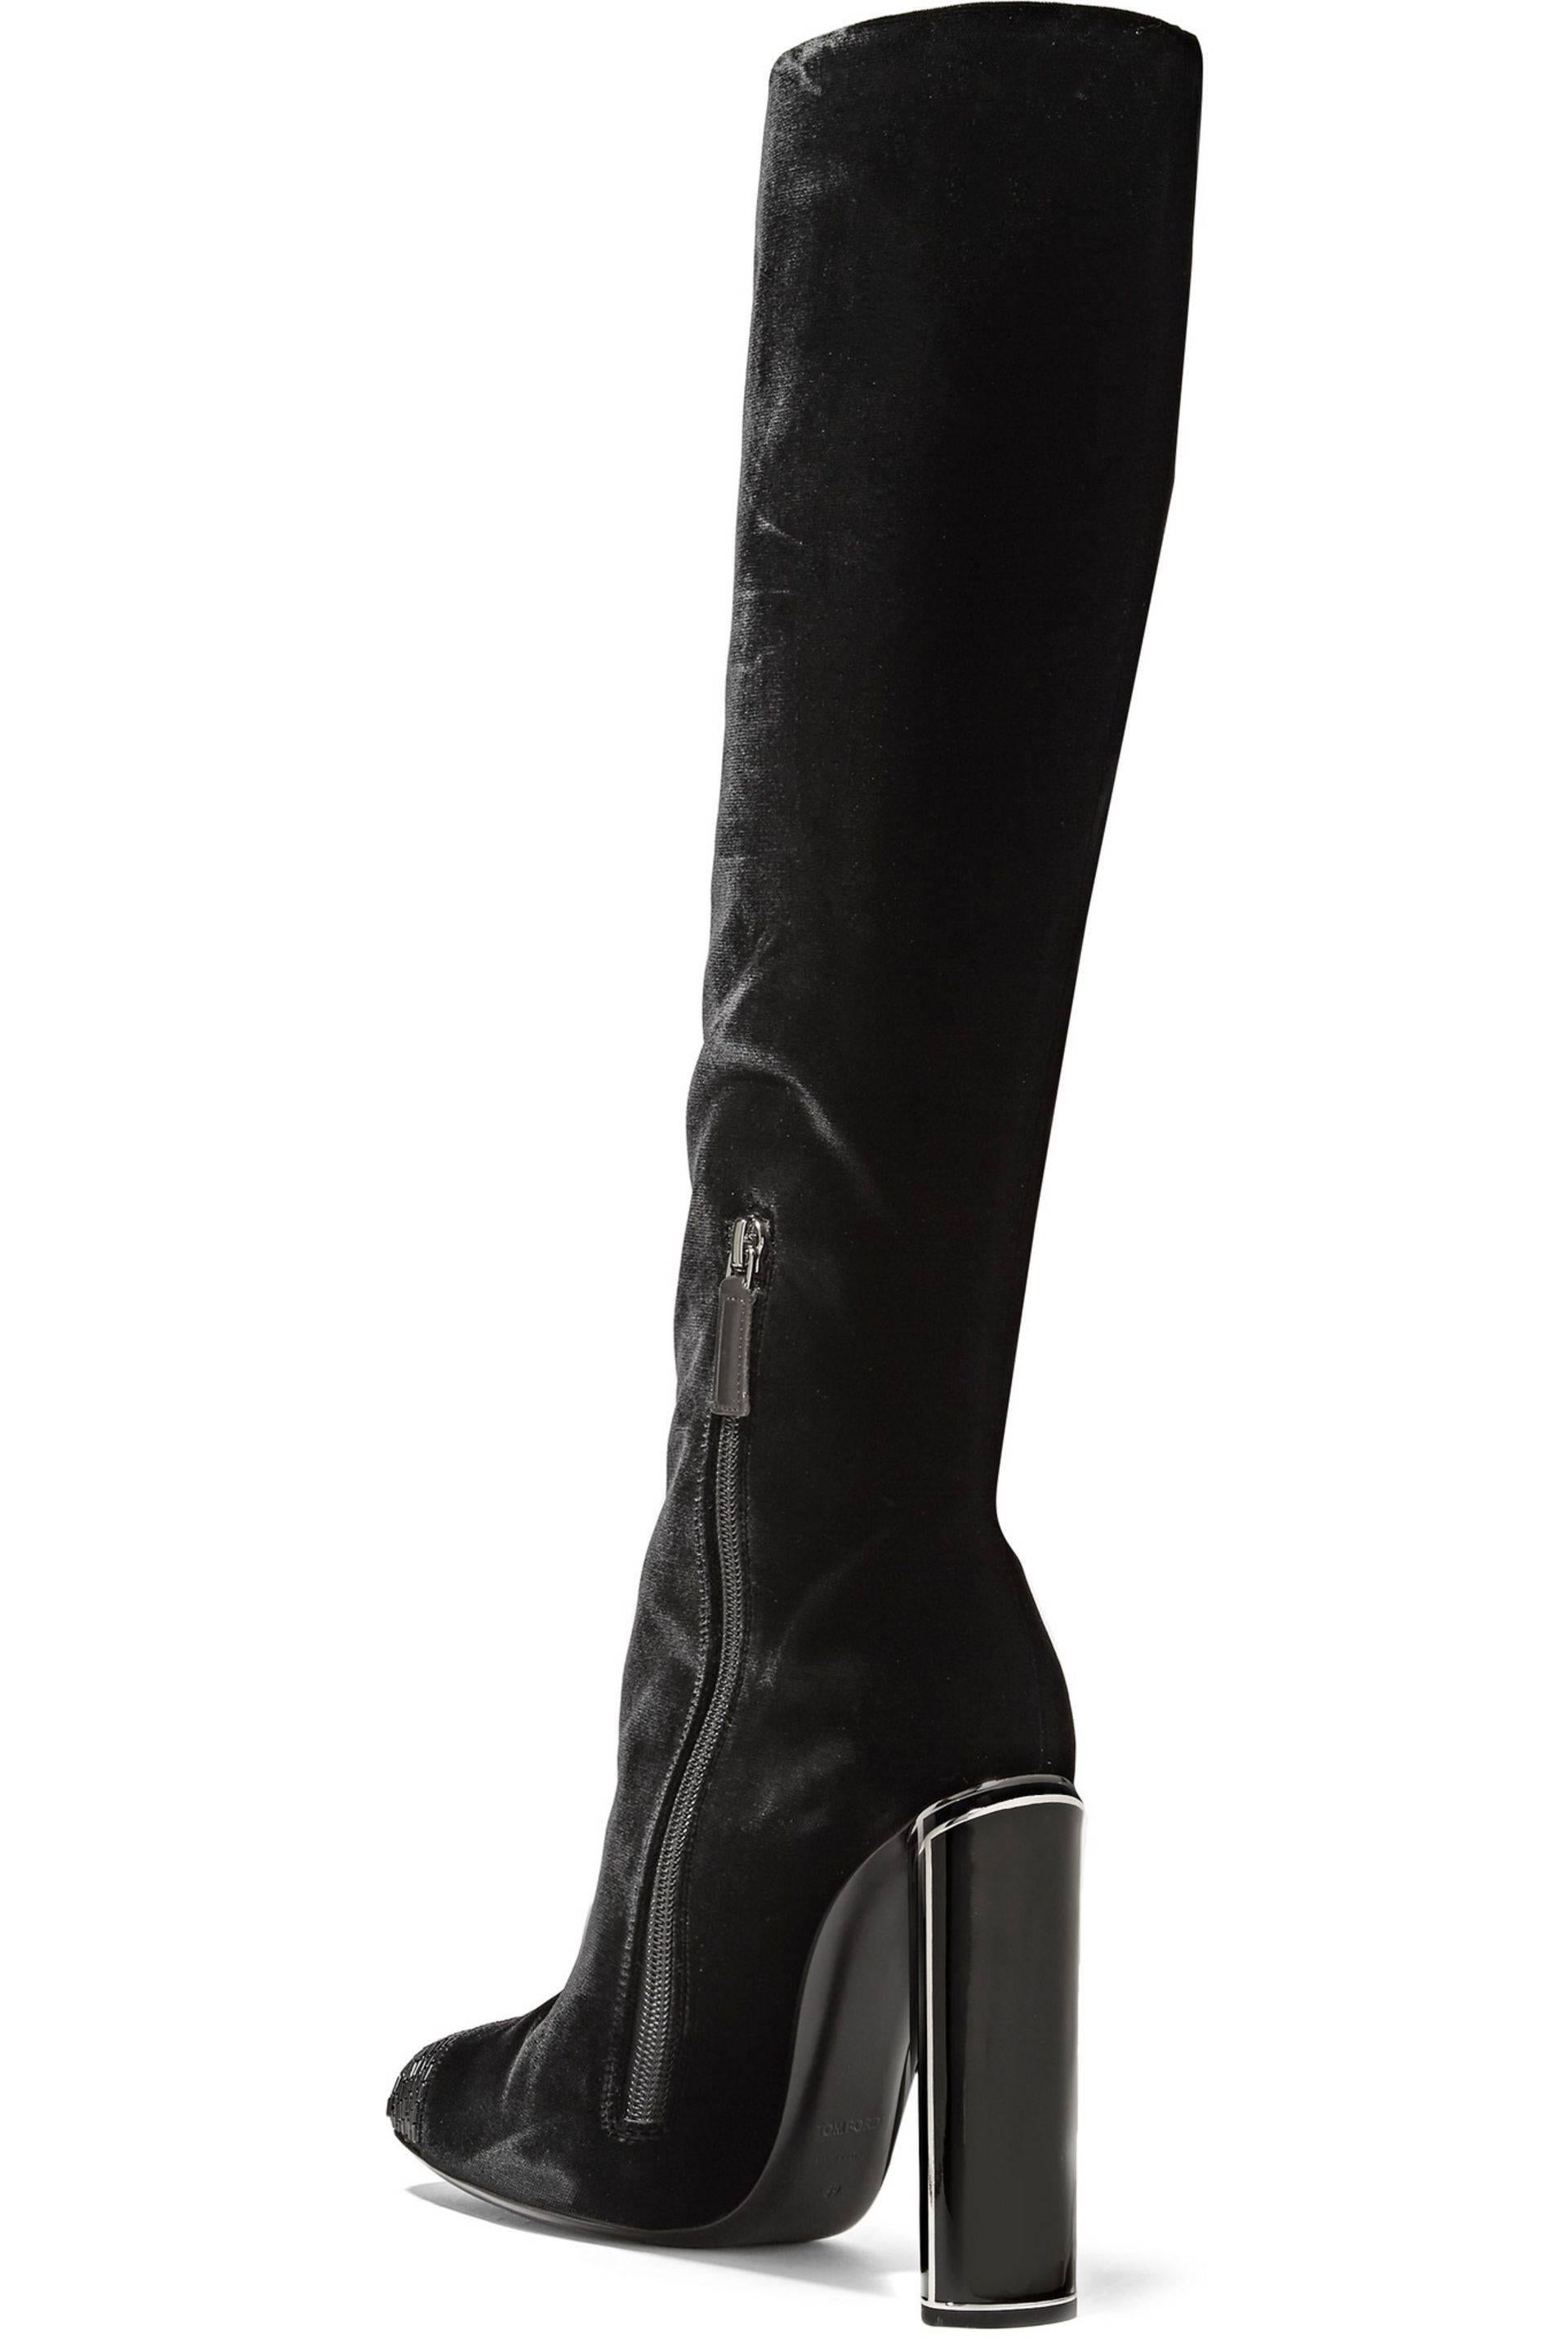 Women's New $2700 Tom Ford Bead-embellished Black Velvet High Heel Boots 39.5 - 9.5 For Sale